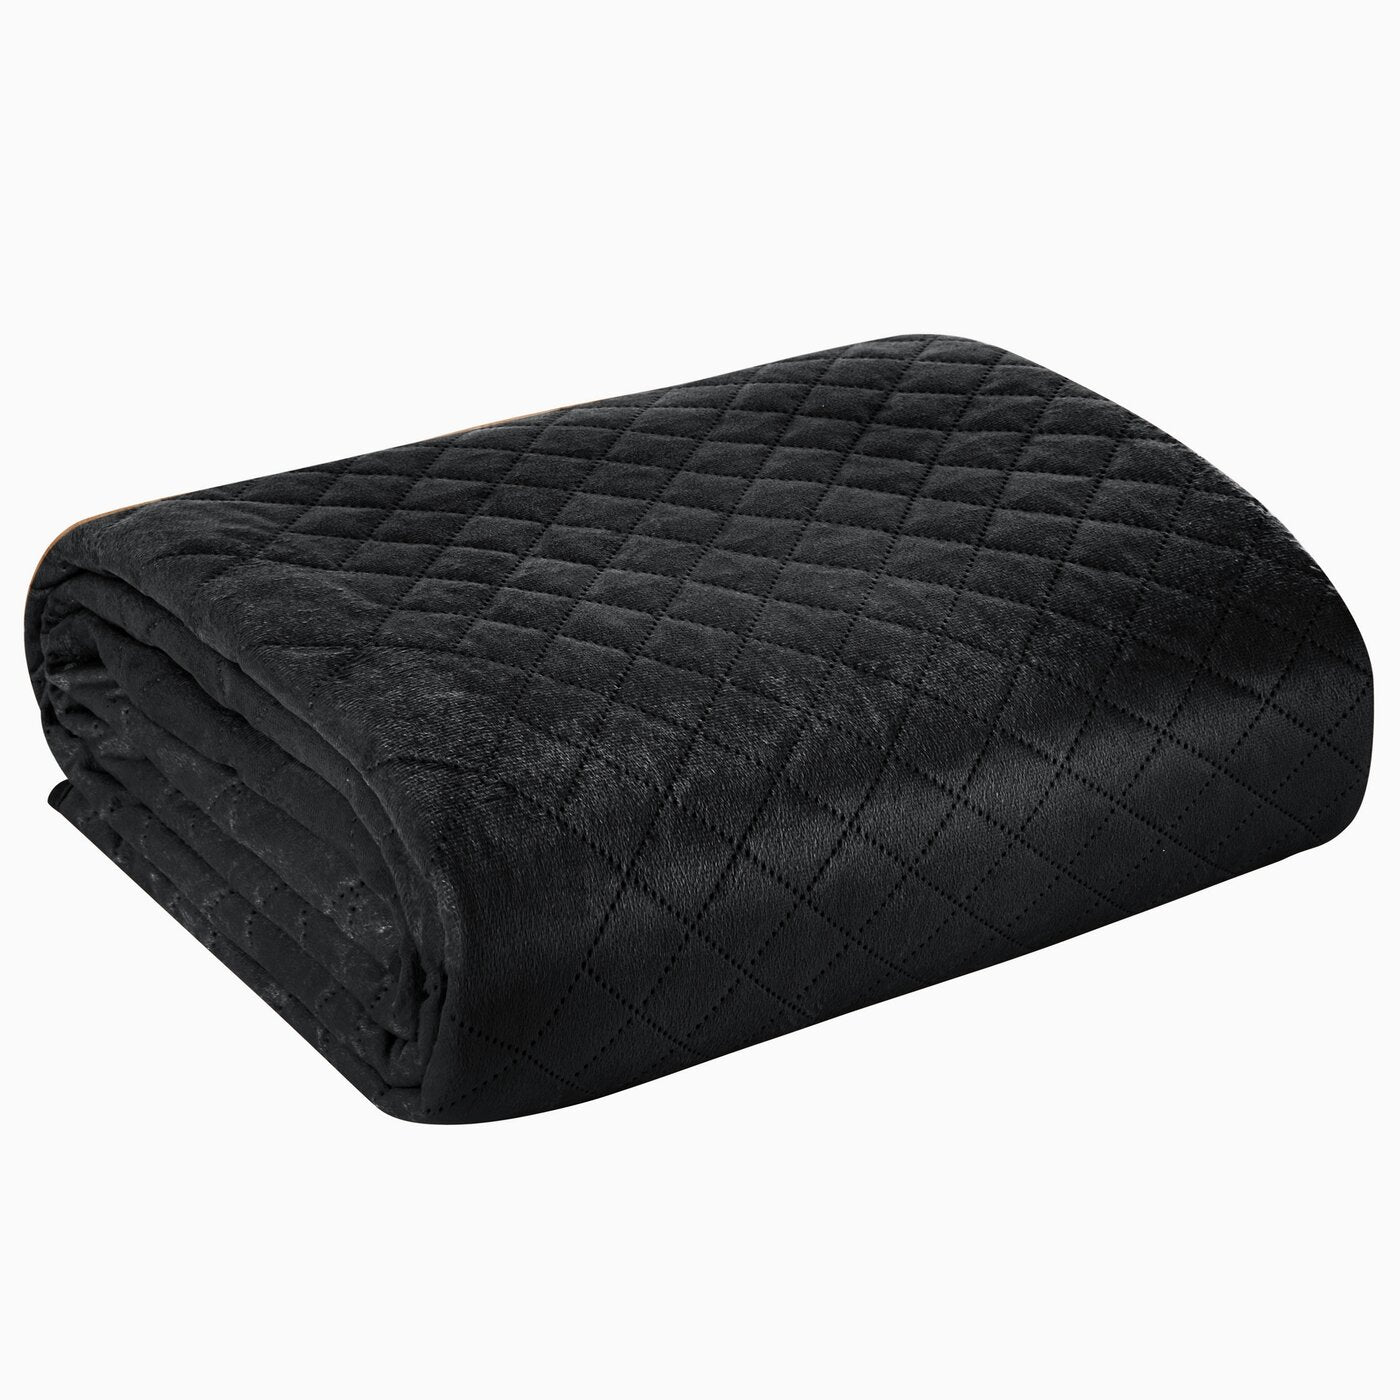 Cuvertură de pat din catifea, matlasată prin presare la cald în model geometric negru LUIZ 3 Perdele de Poveste